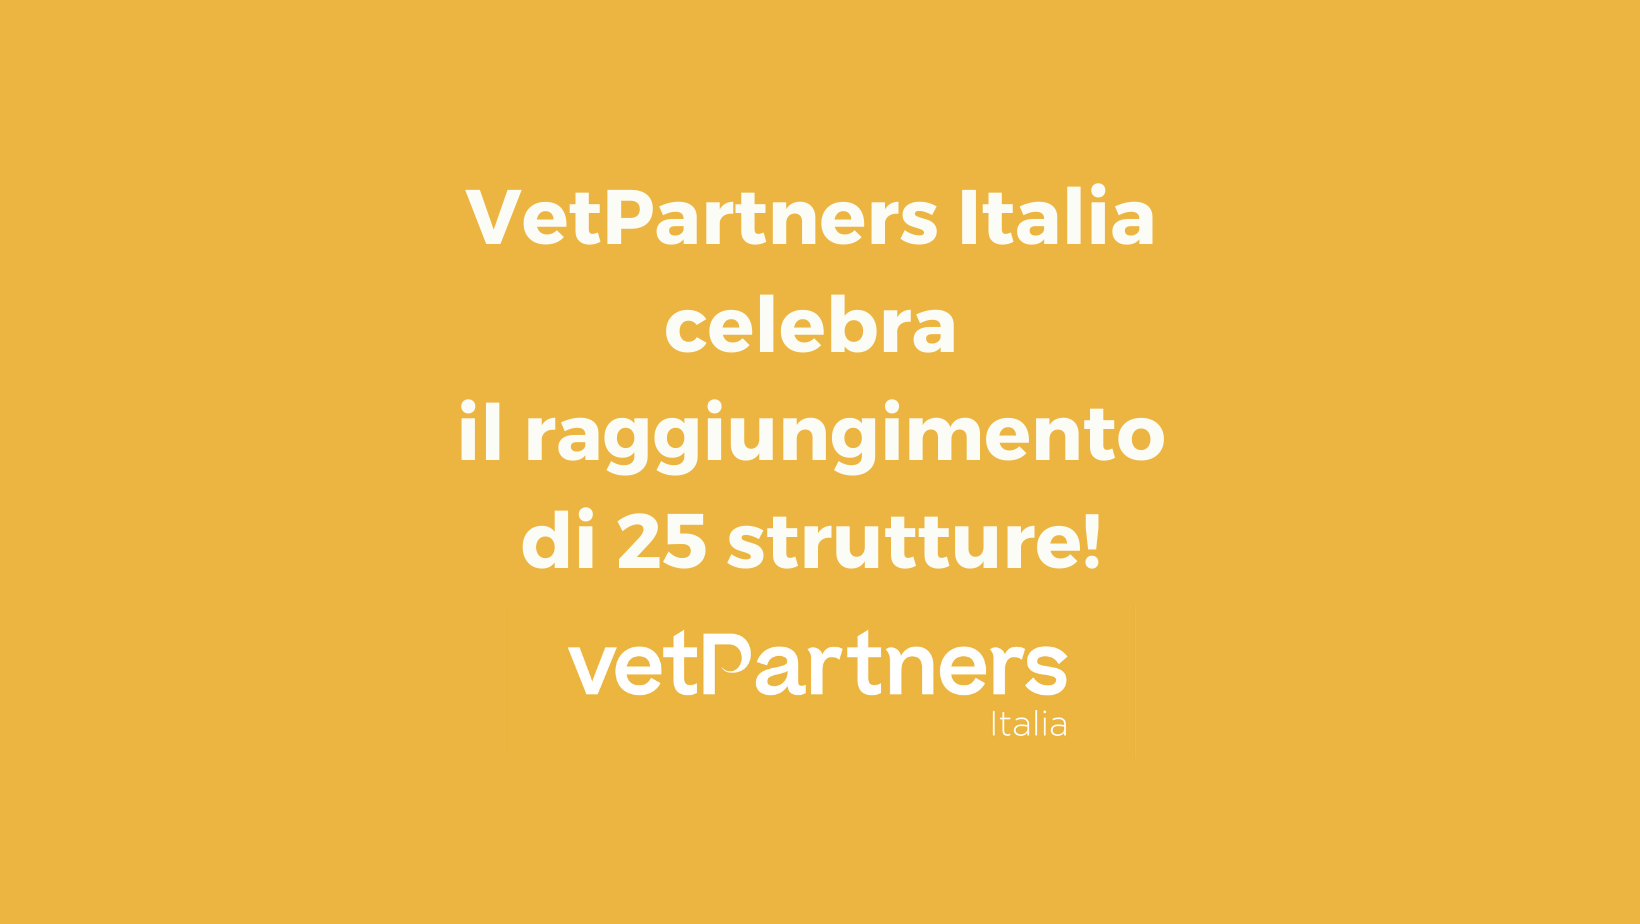 VetPartners Italia celebra il raggiungimento di 25 strutture veterinarie